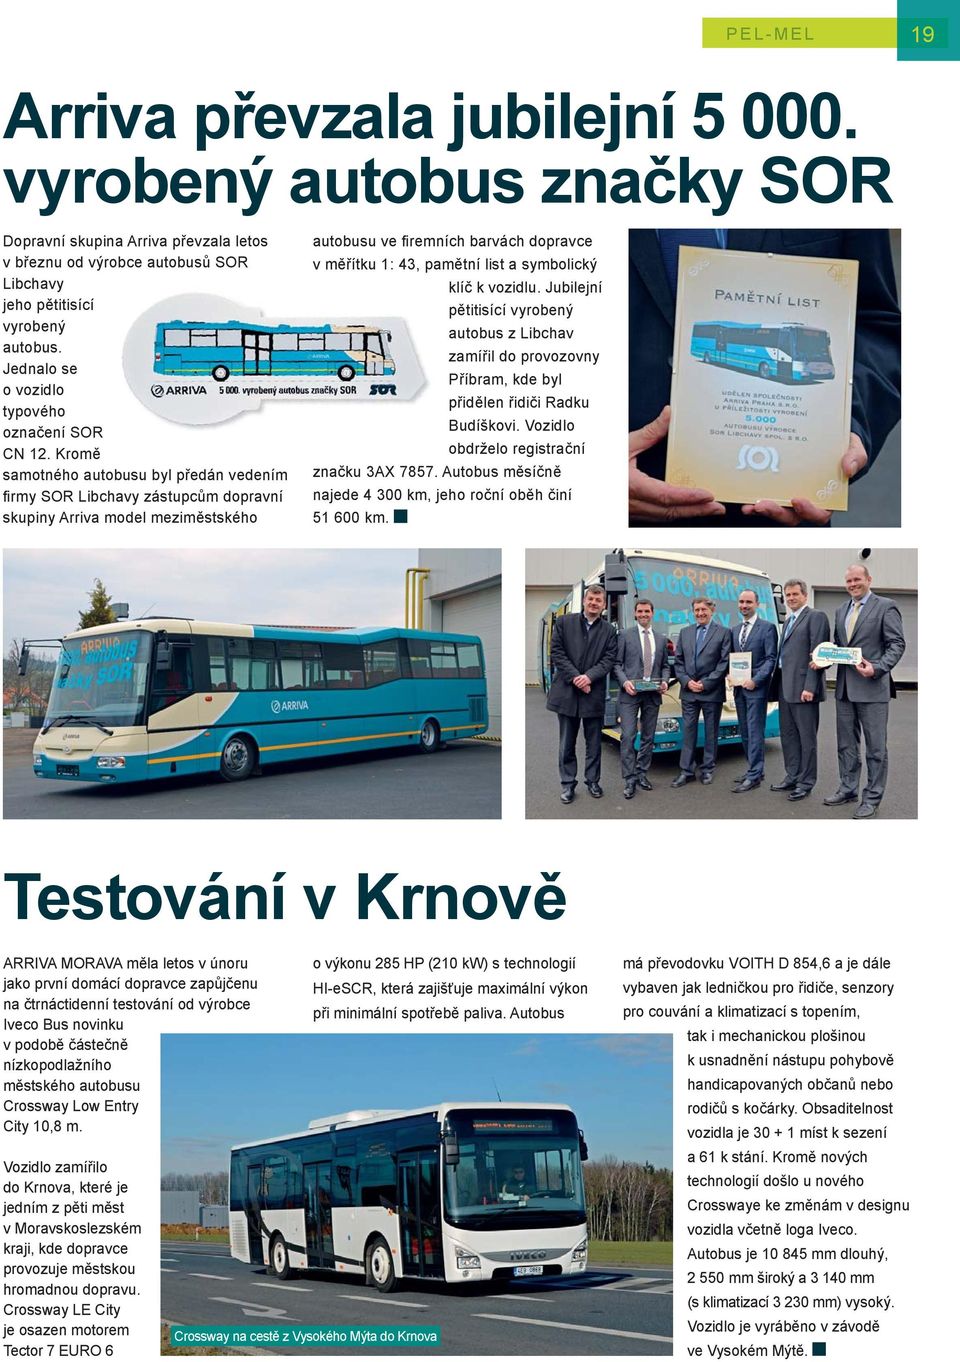 Kromě samotného autobusu byl předán vedením fi rmy SOR Libchavy zástupcům dopravní skupiny Arriva model meziměstského autobusu ve fi remních barvách dopravce v měřítku 1: 43, pamětní list a